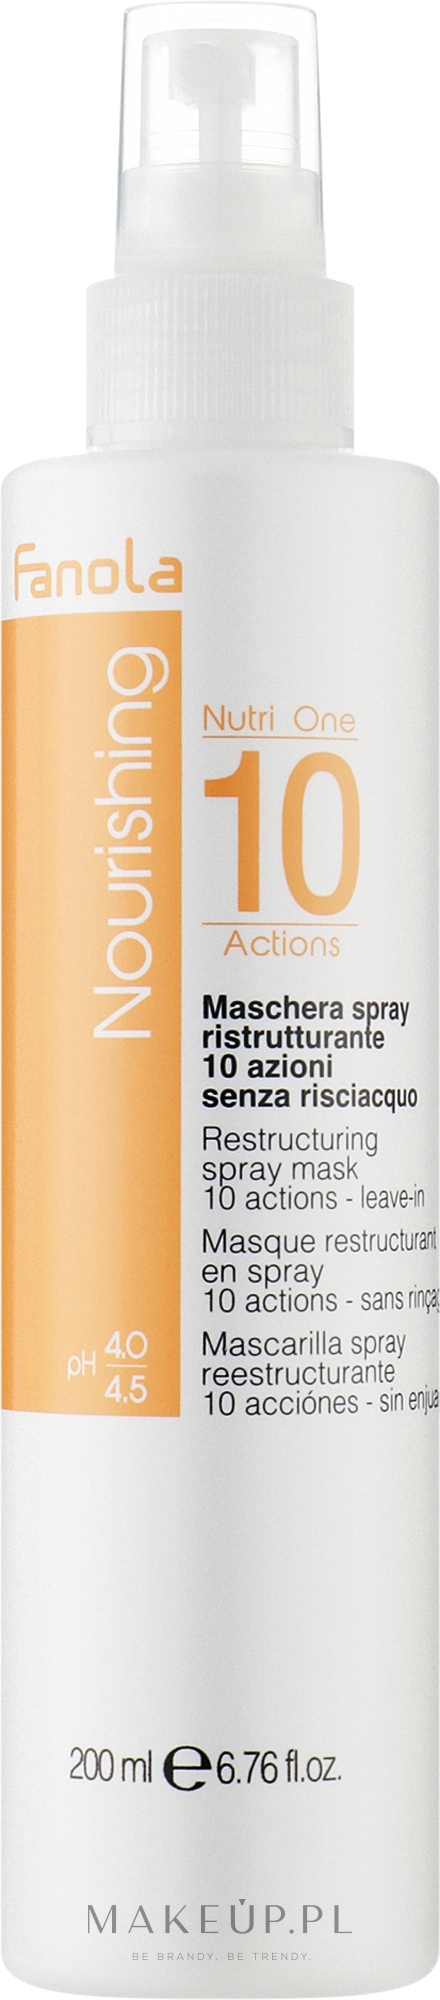 Rewitalizująca maska w sprayu do włosów bez spłukiwania, pH 4,0-4,5 - Fanola Nourishing Nutri One 10 Actions Restructuring Spray Mask — Zdjęcie 200 ml